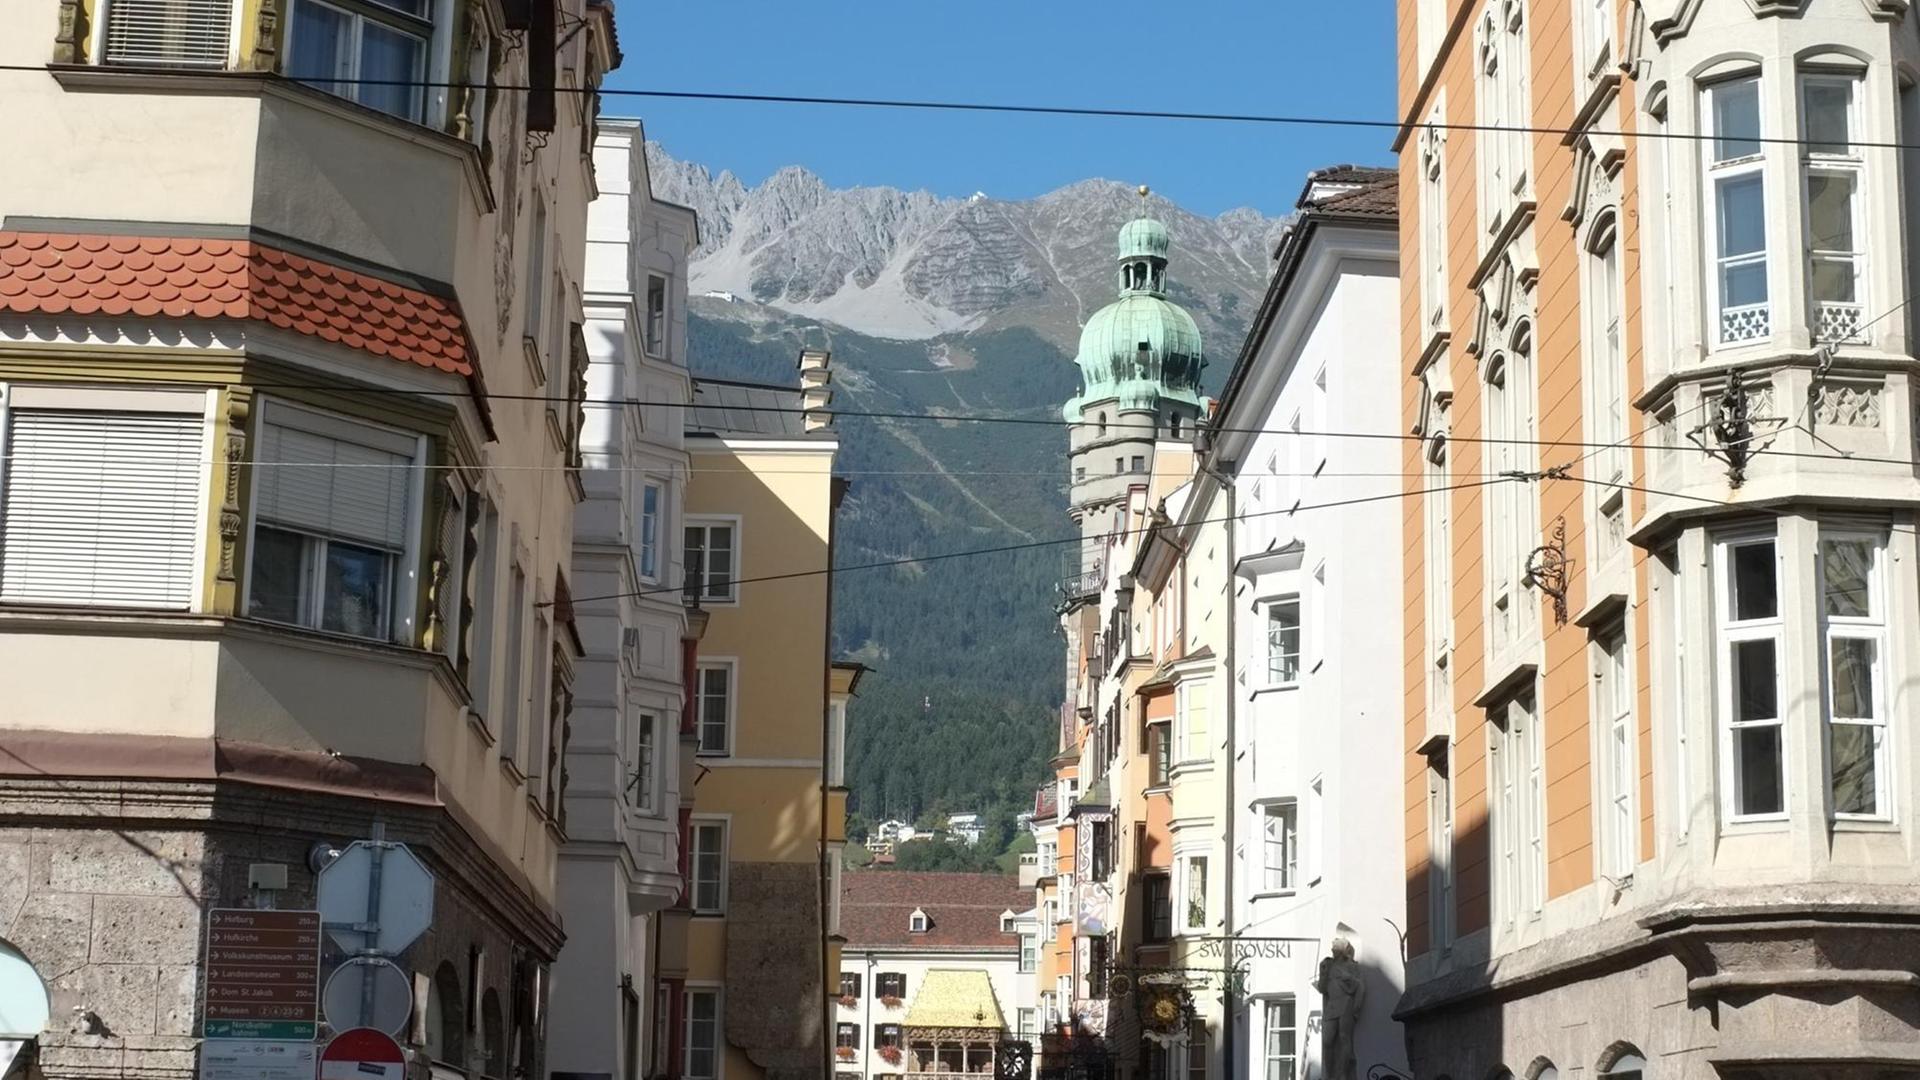 Blick in eine Altstadtgasse Innsbrucks mit den Alpen im Hintergrund und dem "Goldenen Dachl" davor. Das Goldene Dachl ist ein Gebäude mit spätgotischem Prunkerker in der Innsbrucker Altstadt und gilt als Wahrzeichen der Stadt